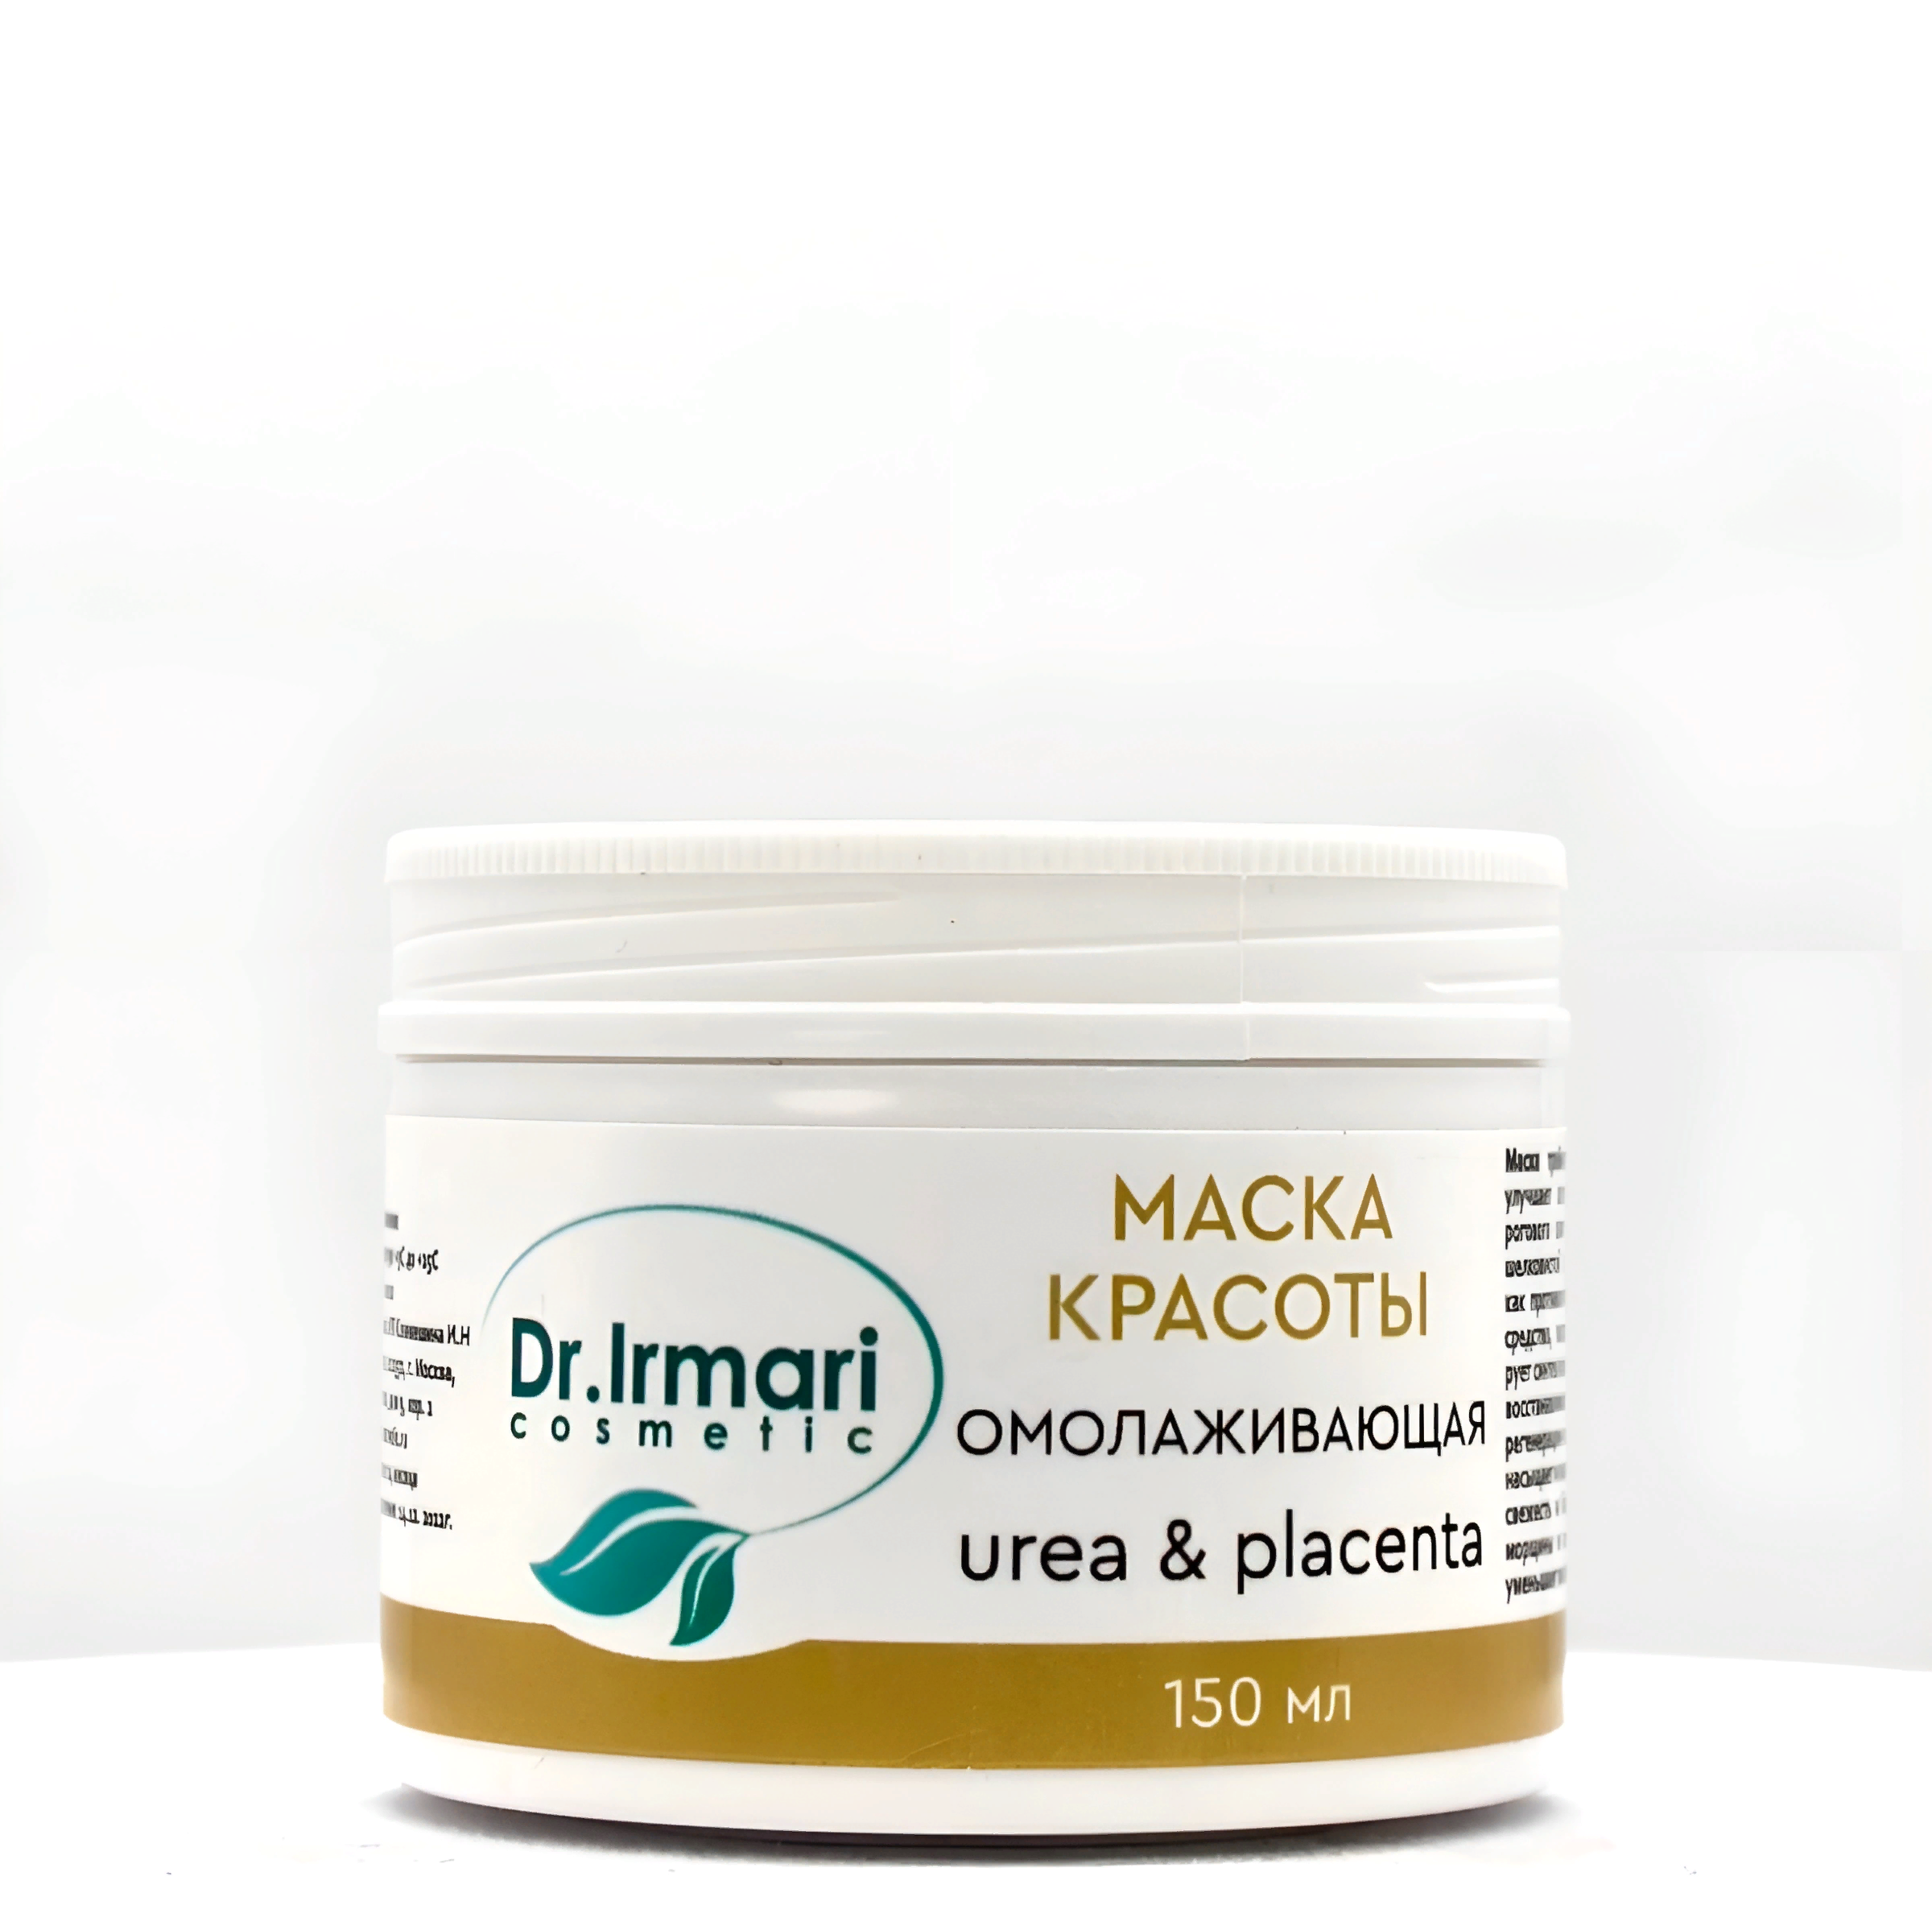 Маска для лица Dr.Irmari cosmetic Urea & Placenta омолаживающая 150 мл маска для лица dr irmari cosmetic urea